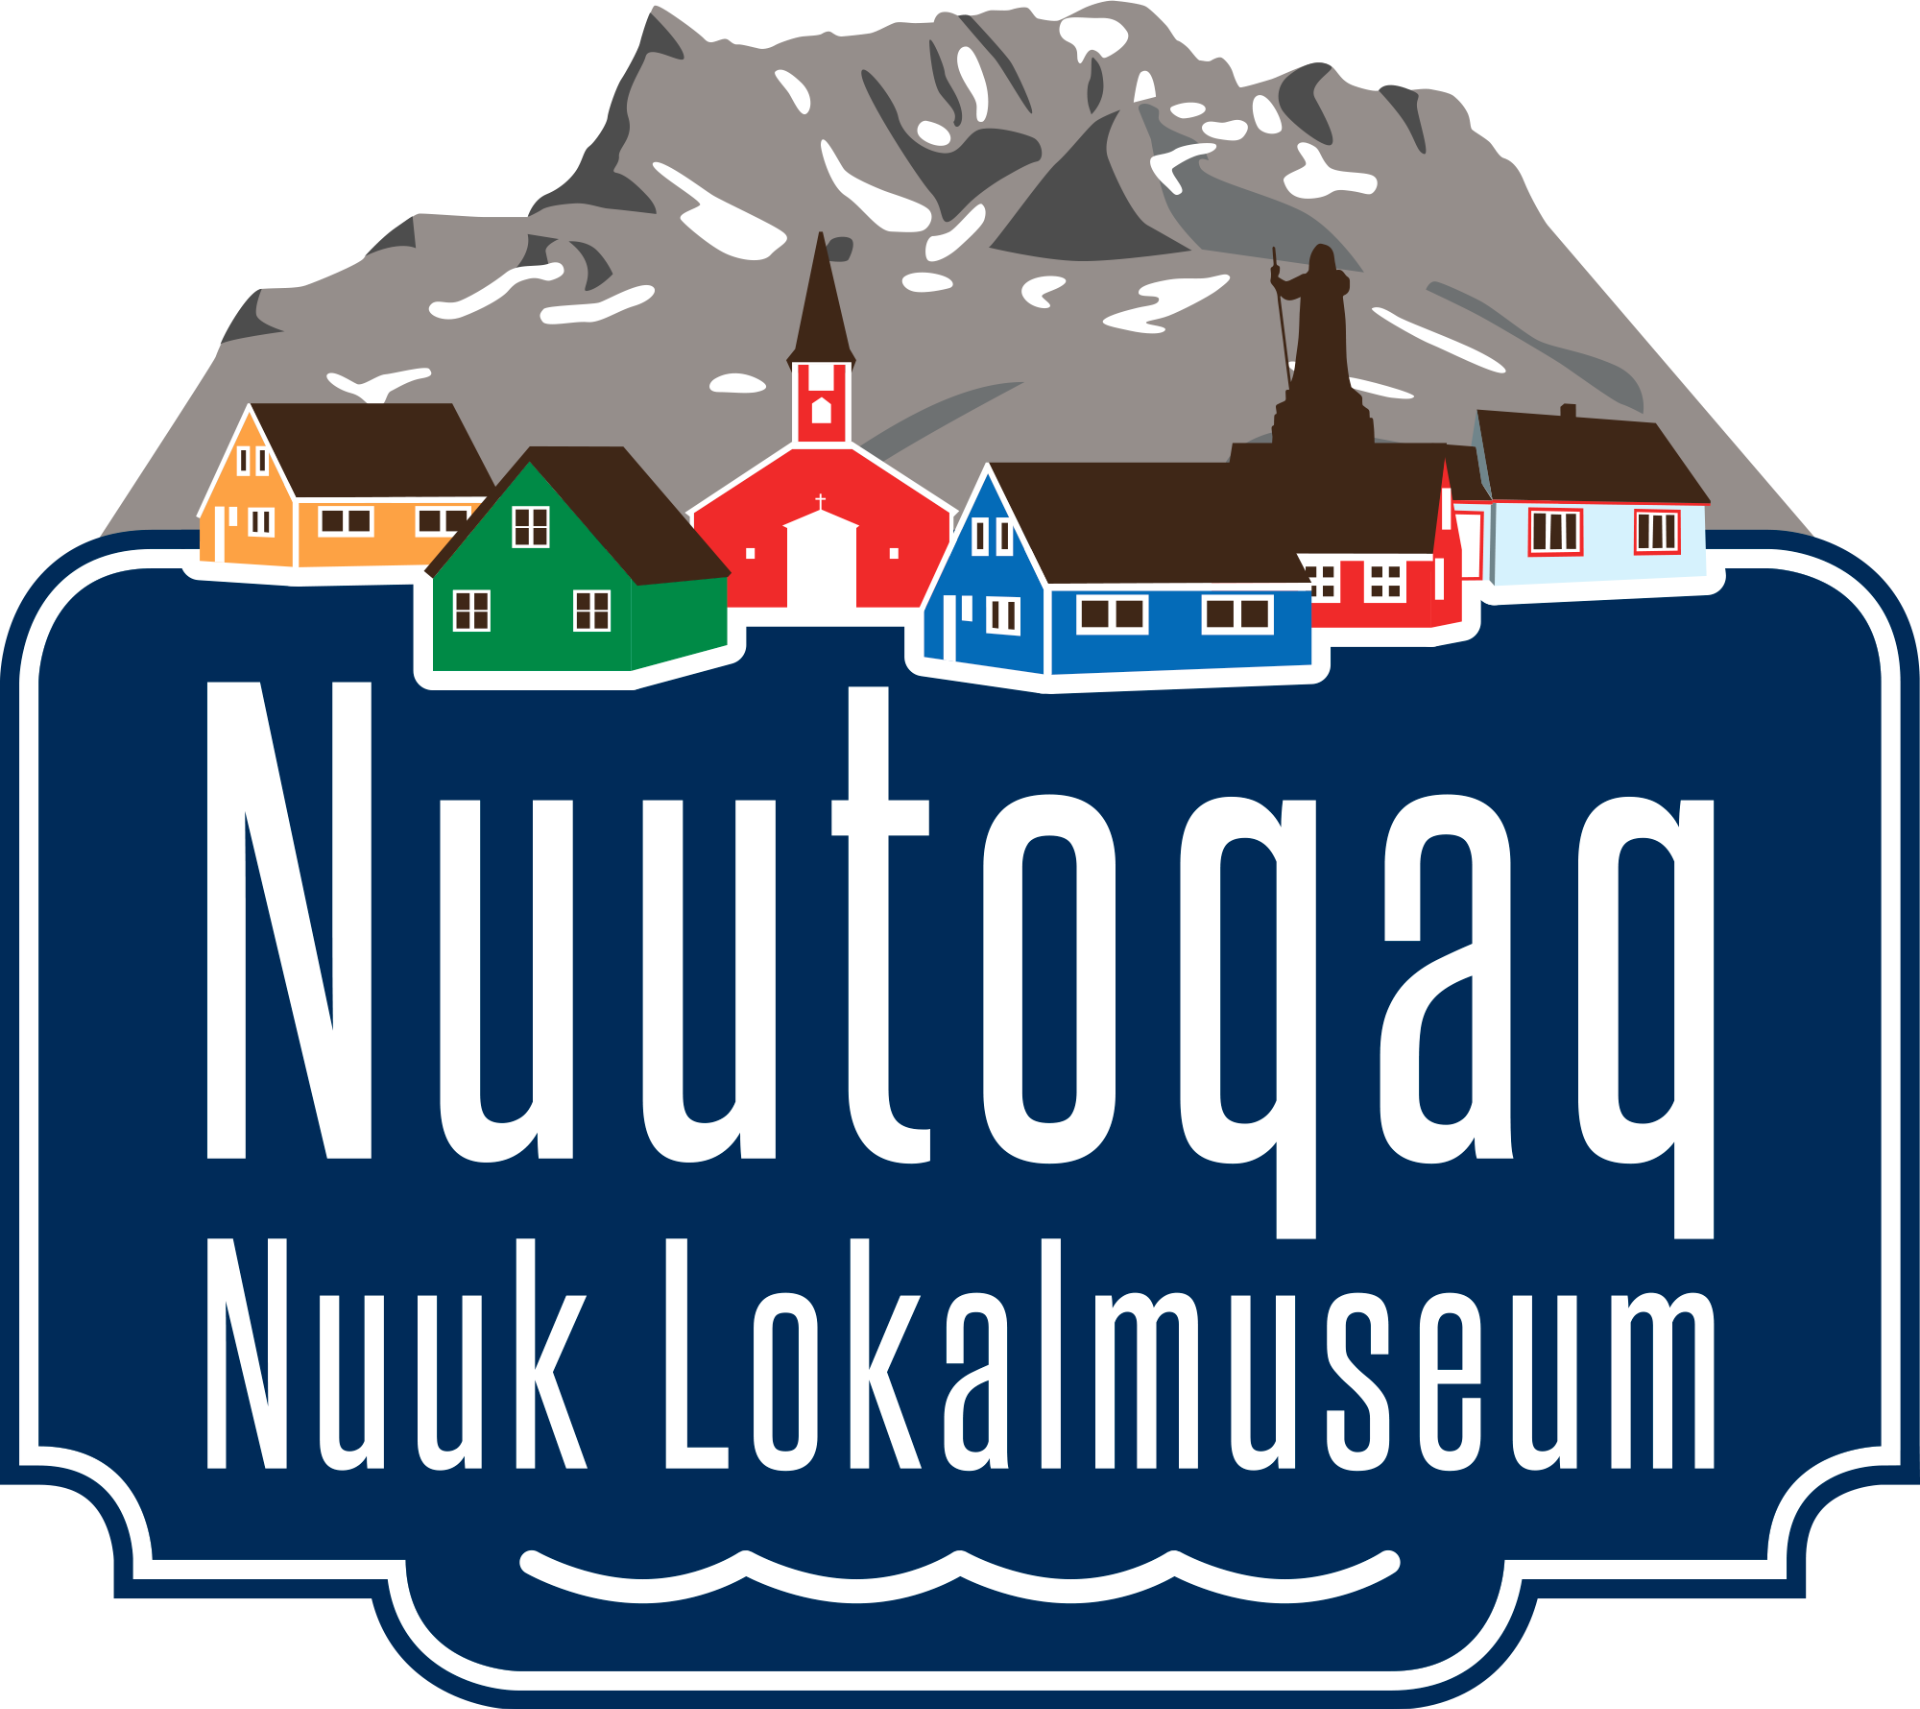 Nuutoqaq